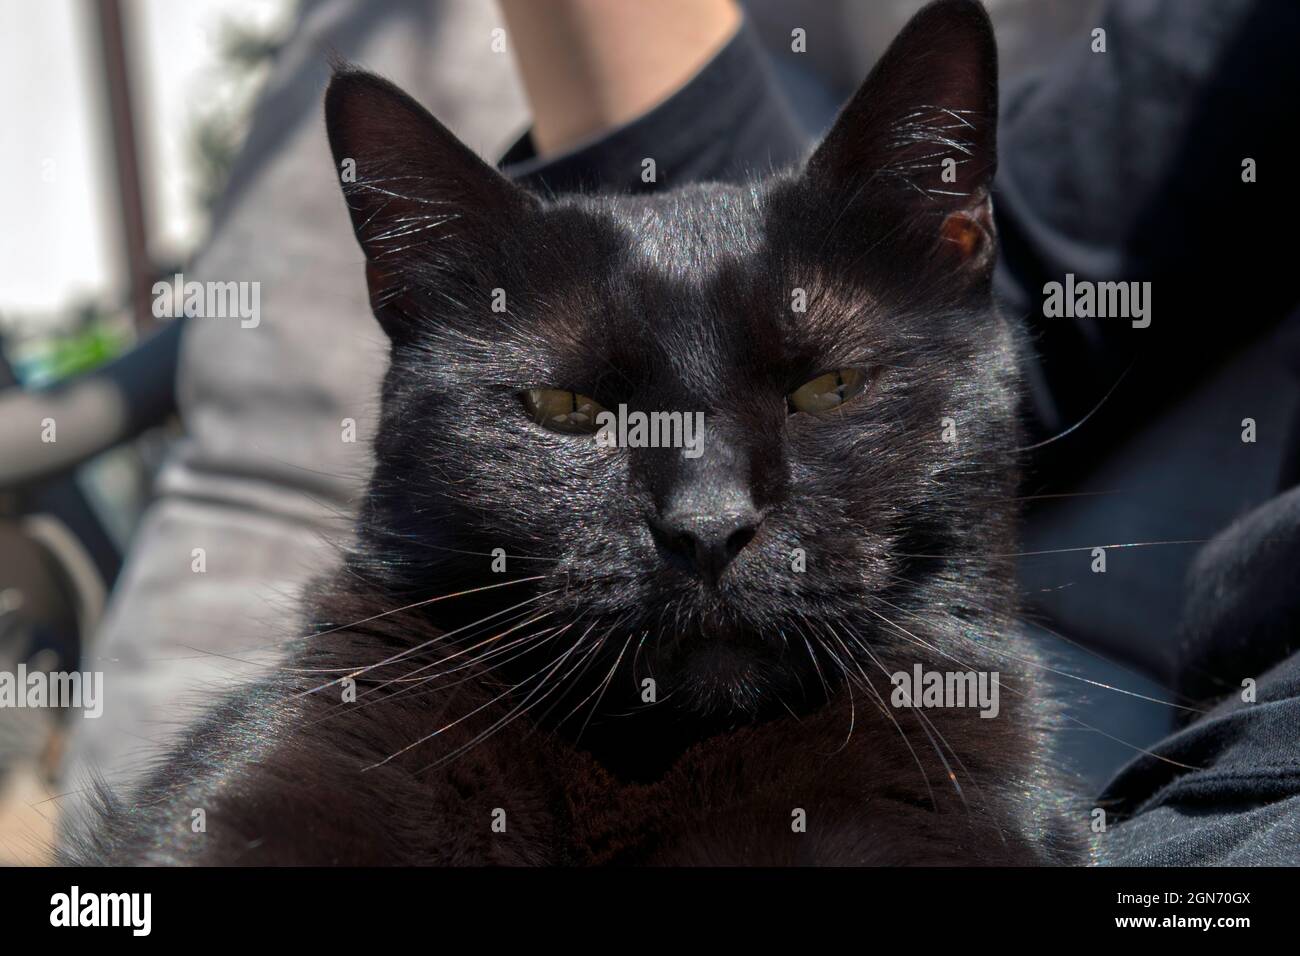 Magnifique portrait de chat noir, gros plan à la lumière naturelle. Elle est assise sur les genoux d'une personne, regardant directement la caméra sans aucun soin. Banque D'Images